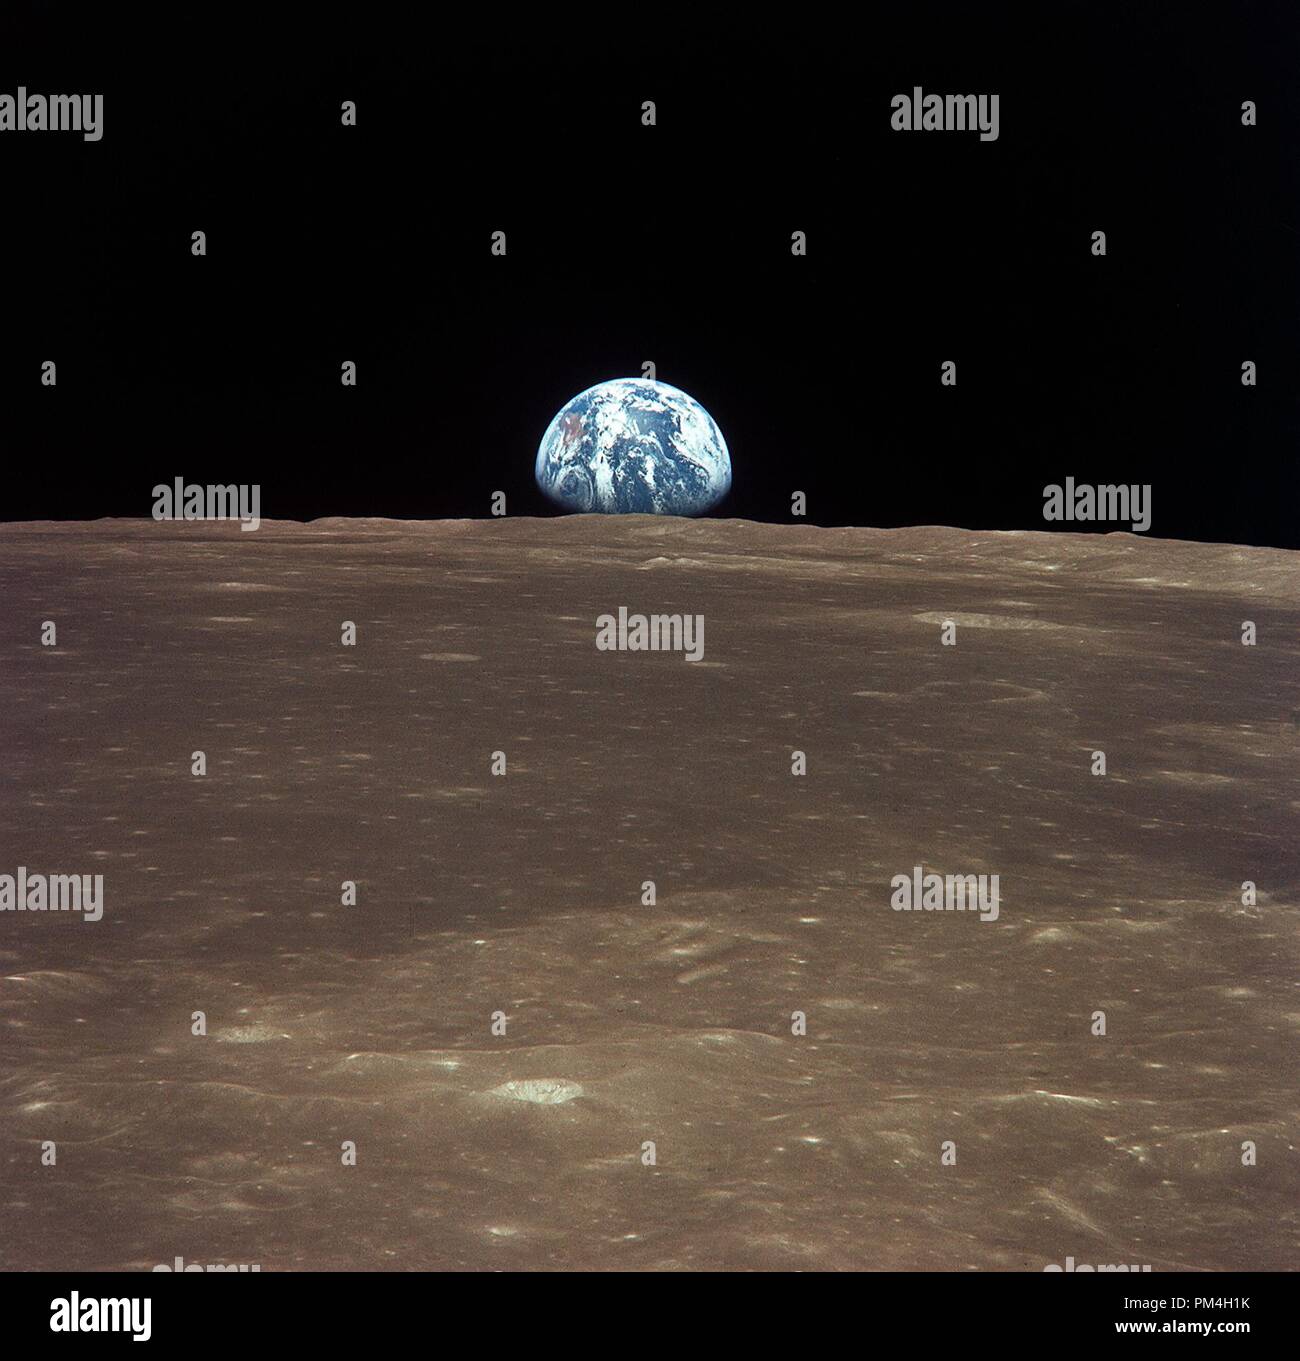 (16-24 juillet 1969) --- cette vue du vaisseau spatial Apollo 11 montre la lune se lever au-dessus de la terre l'horizon. Le relief lunaire est illustrée dans le domaine de la mer de Smyth de la face visible. Coordonnées du centre du terrain a 86 degrés de longitude est et 3 degrés de latitude nord. Bien que les astronautes Neil A. Armstrong, commandant, et Edwin E. Aldrin Jr., pilote du module lunaire, est descendu dans le module lunaire (LM) "Eagle" pour explorer la région de la mer de la tranquillité de la lune, l'astronaute Michael Collins, pilote du module de commande, est restée avec la commande et modules de service (CSM) 'Colombie-Britannique' dans l'orbite lunaire. Banque D'Images